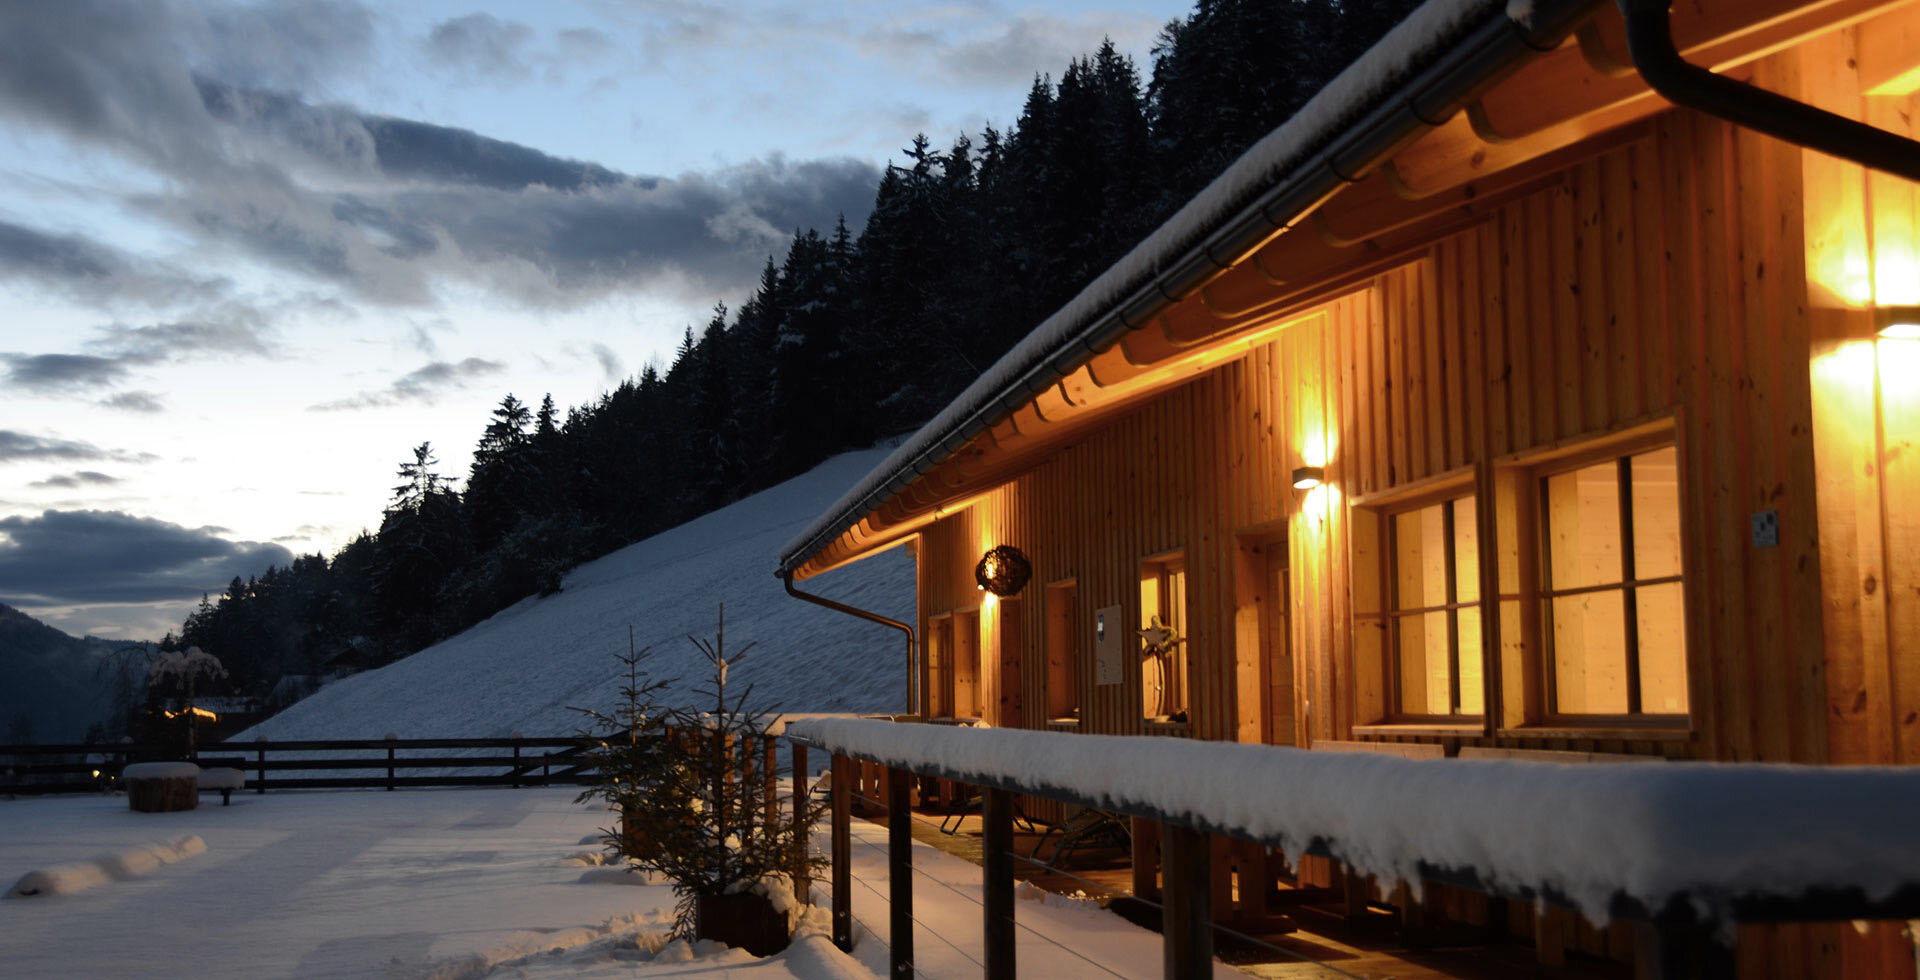 Urlaub in Welschnofen Dolomiten UNESCO Welterbe